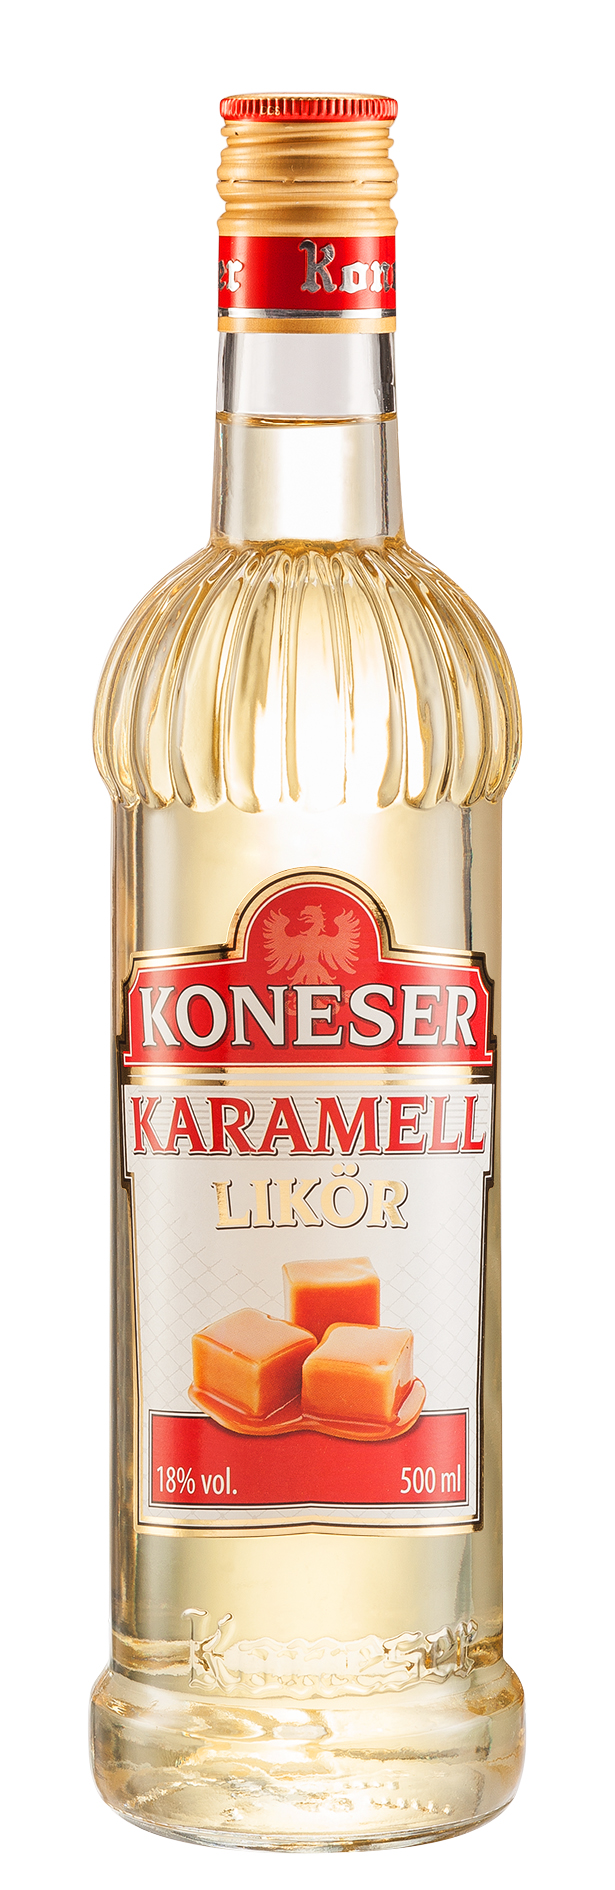 Koneser Karamell Likör 18% vol. 0,5L 